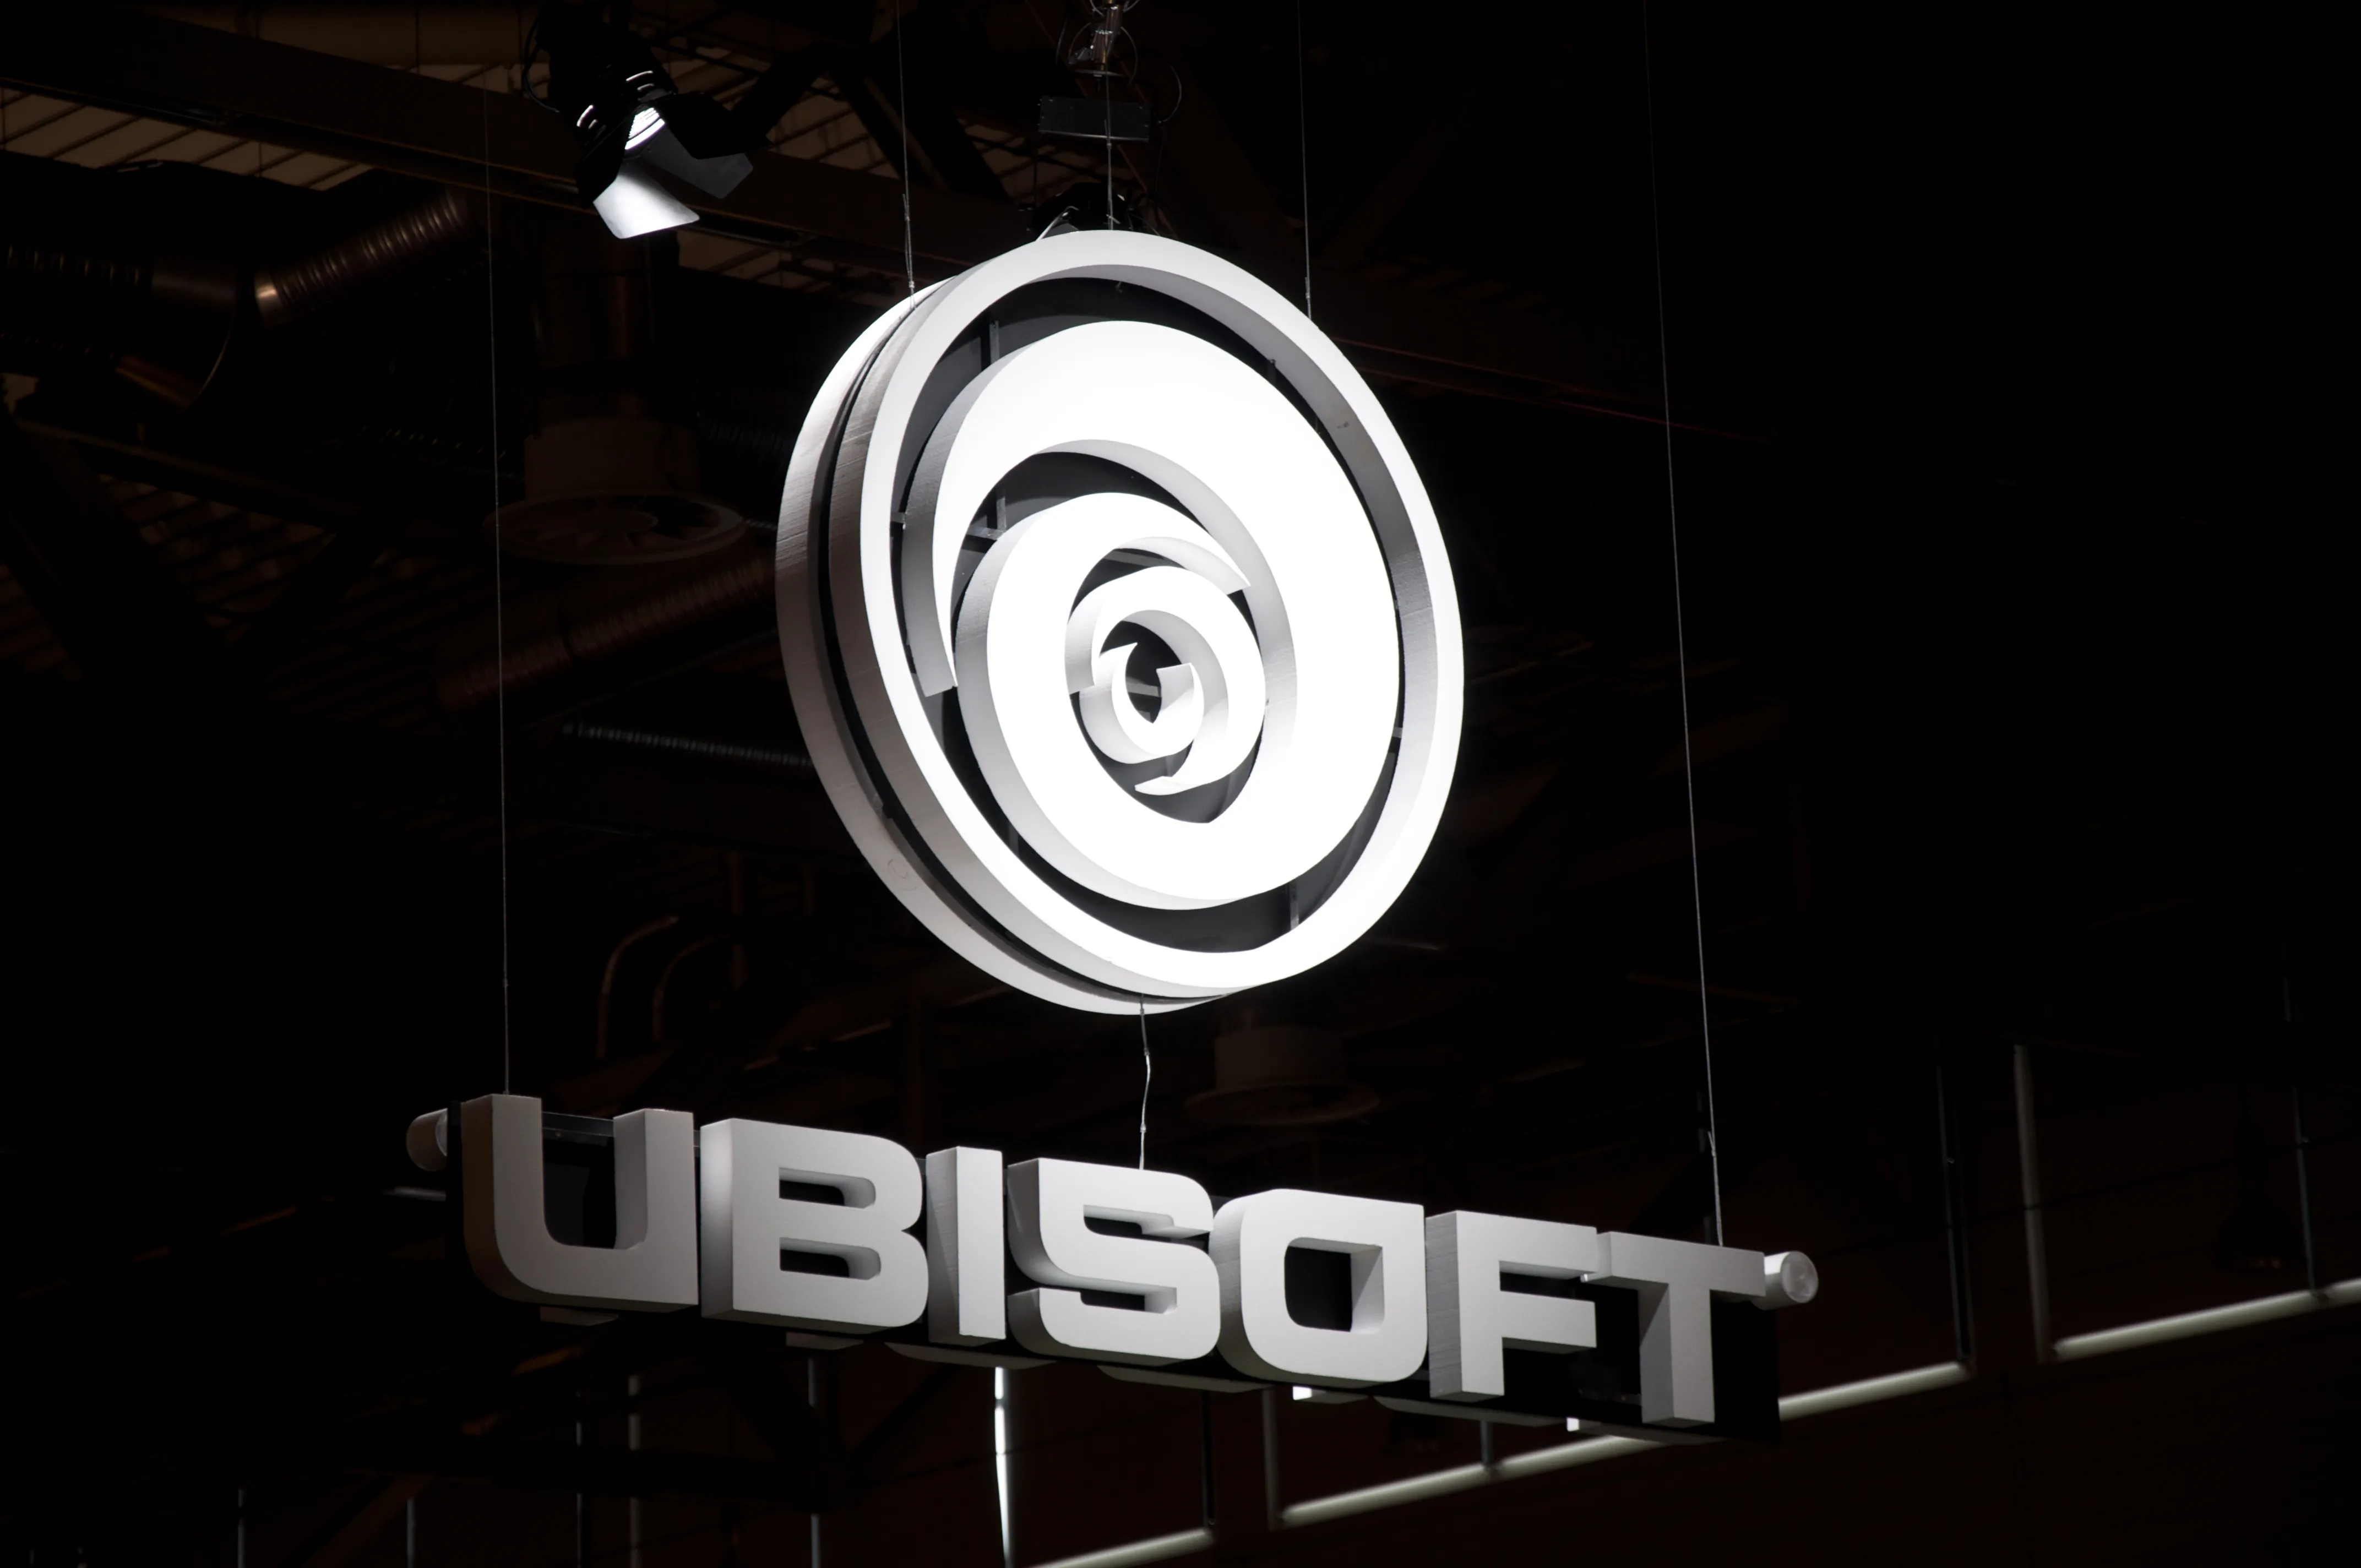 Ubisoft montreal. Ubisoft. Ubisoft компания. Логотип Ubisoft. Орбитсофт.